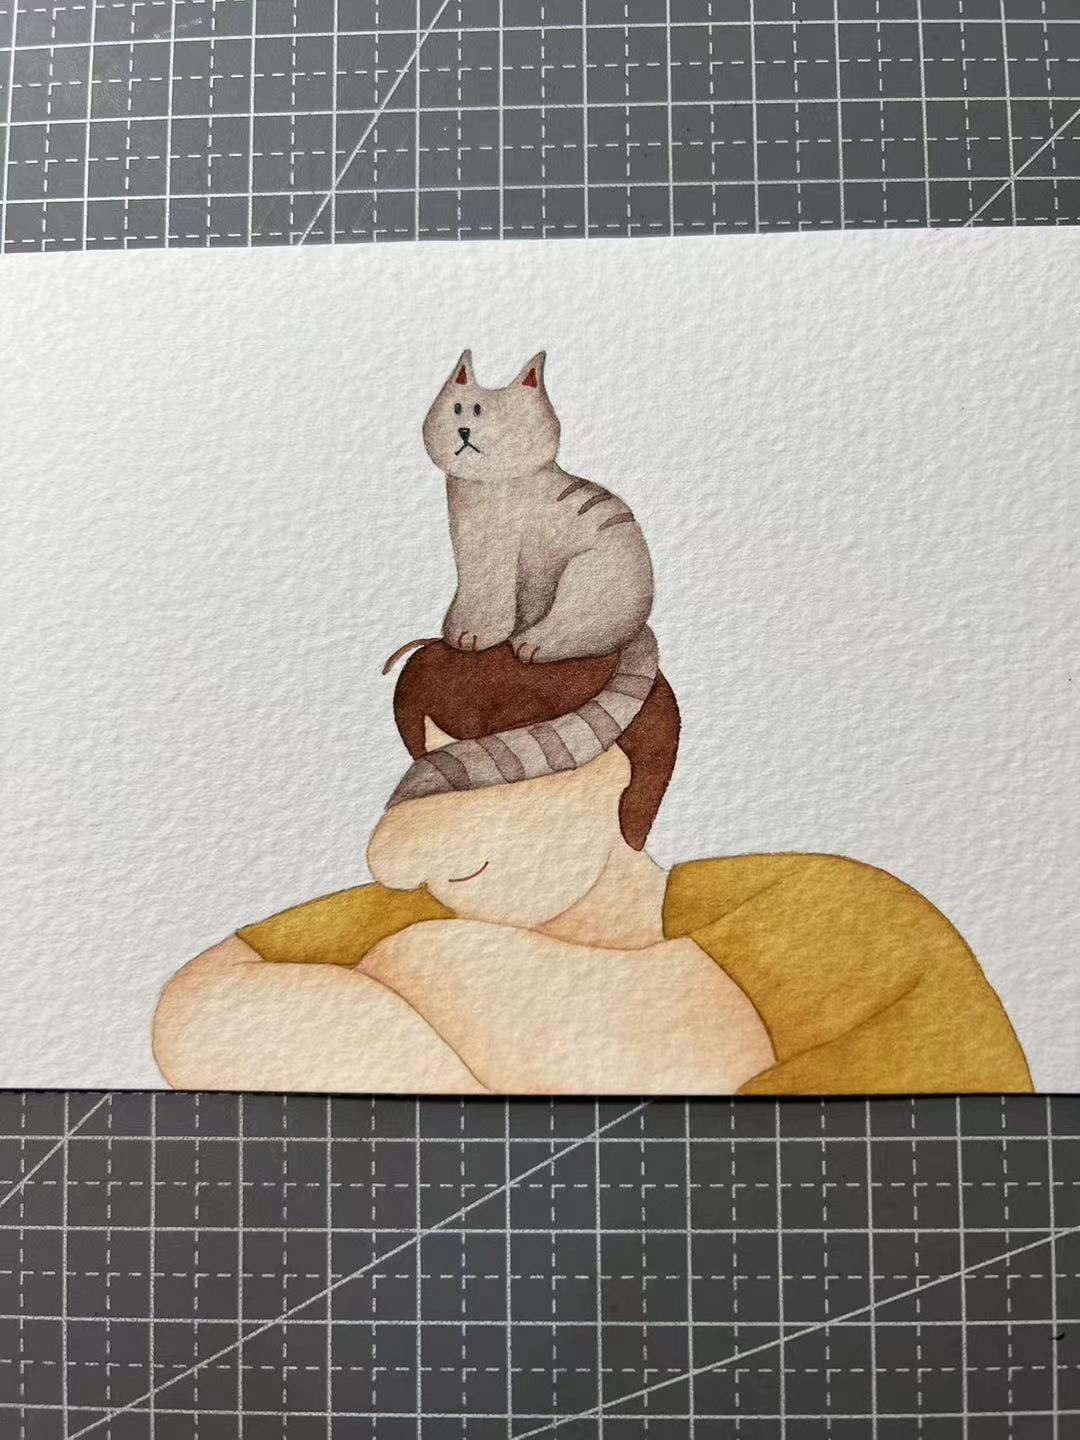 【三猫手绘】水彩画作品《谁家的小猫咪》1396装饰画